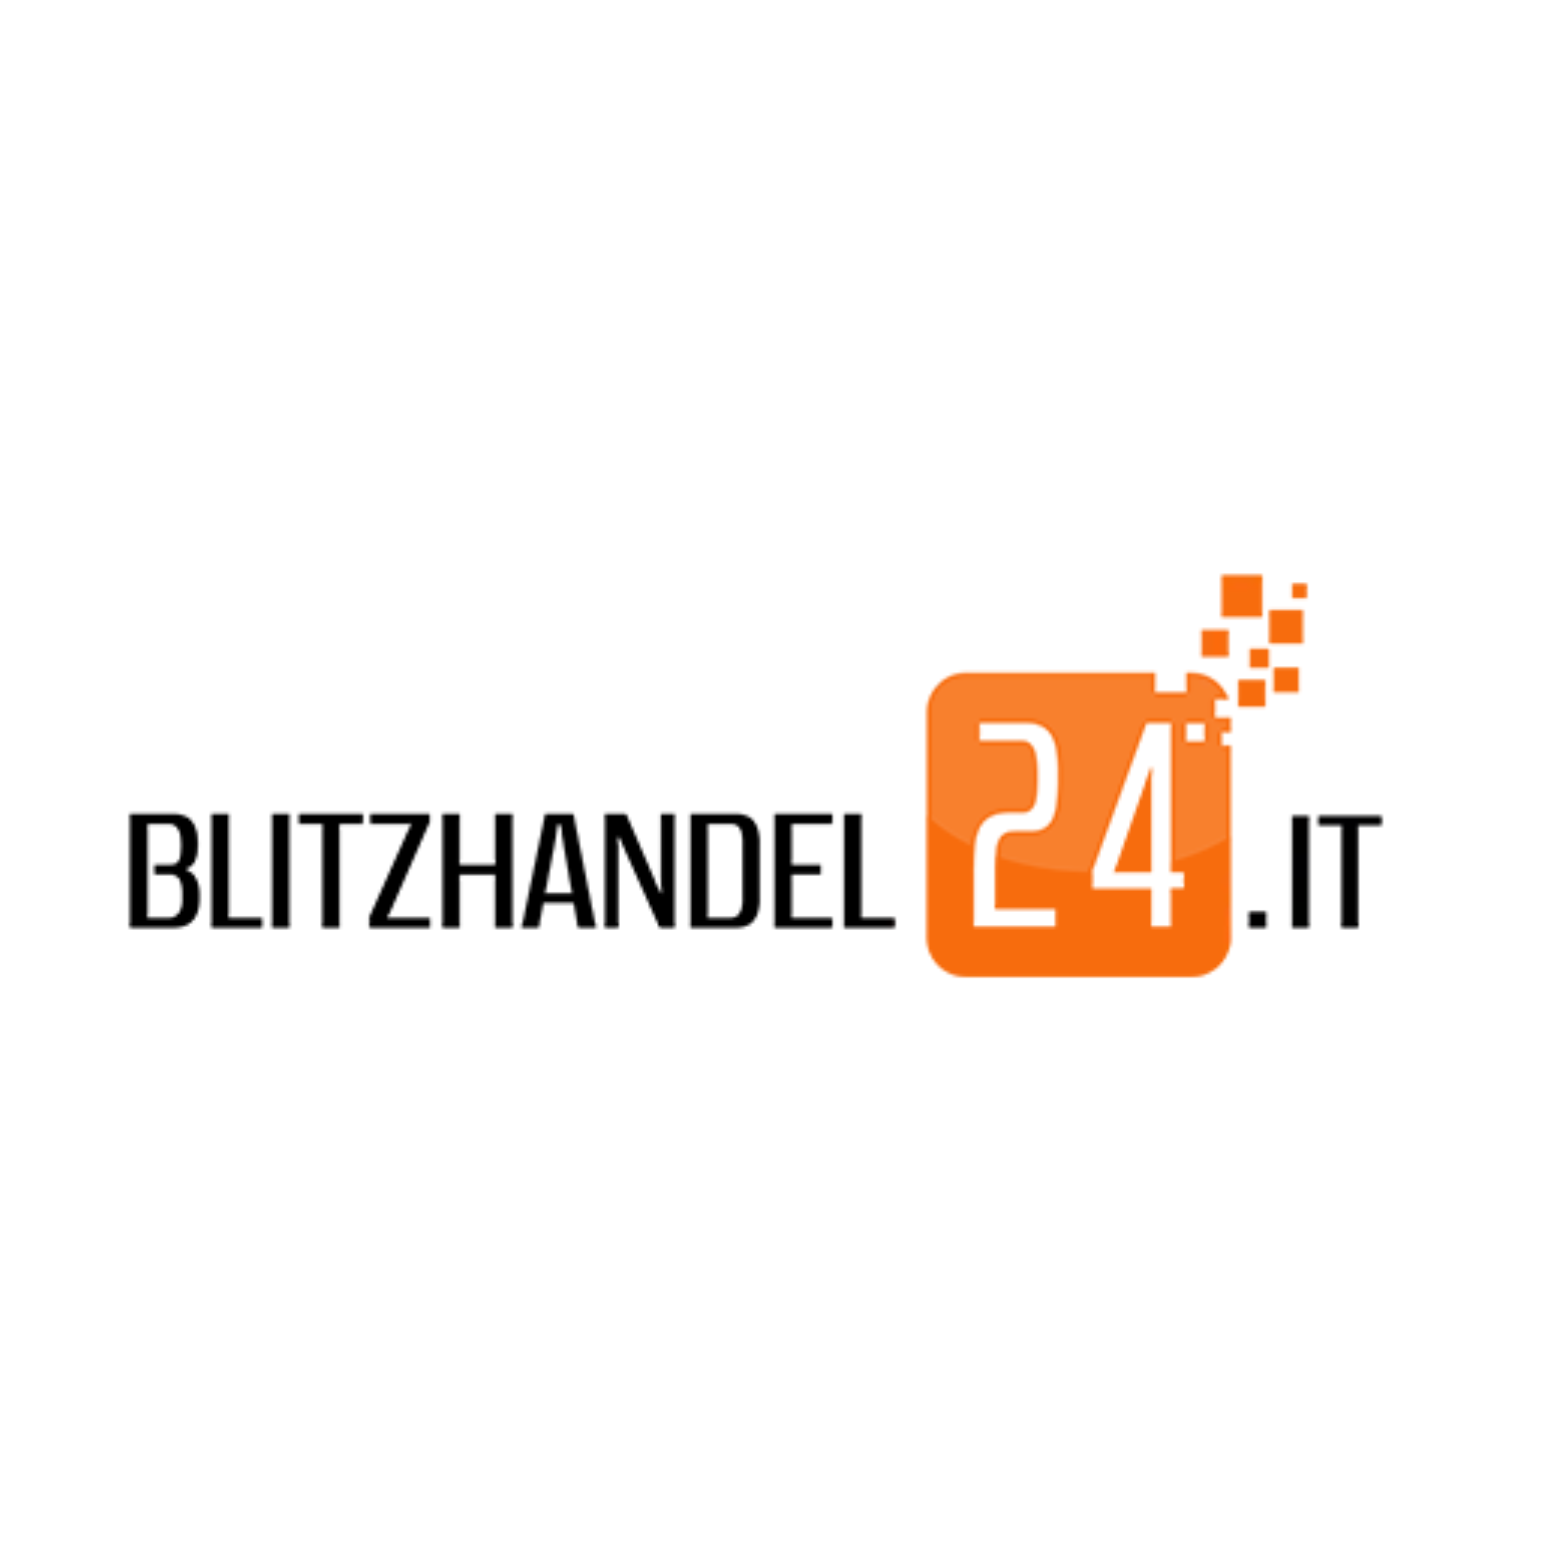 Blitzhandel24